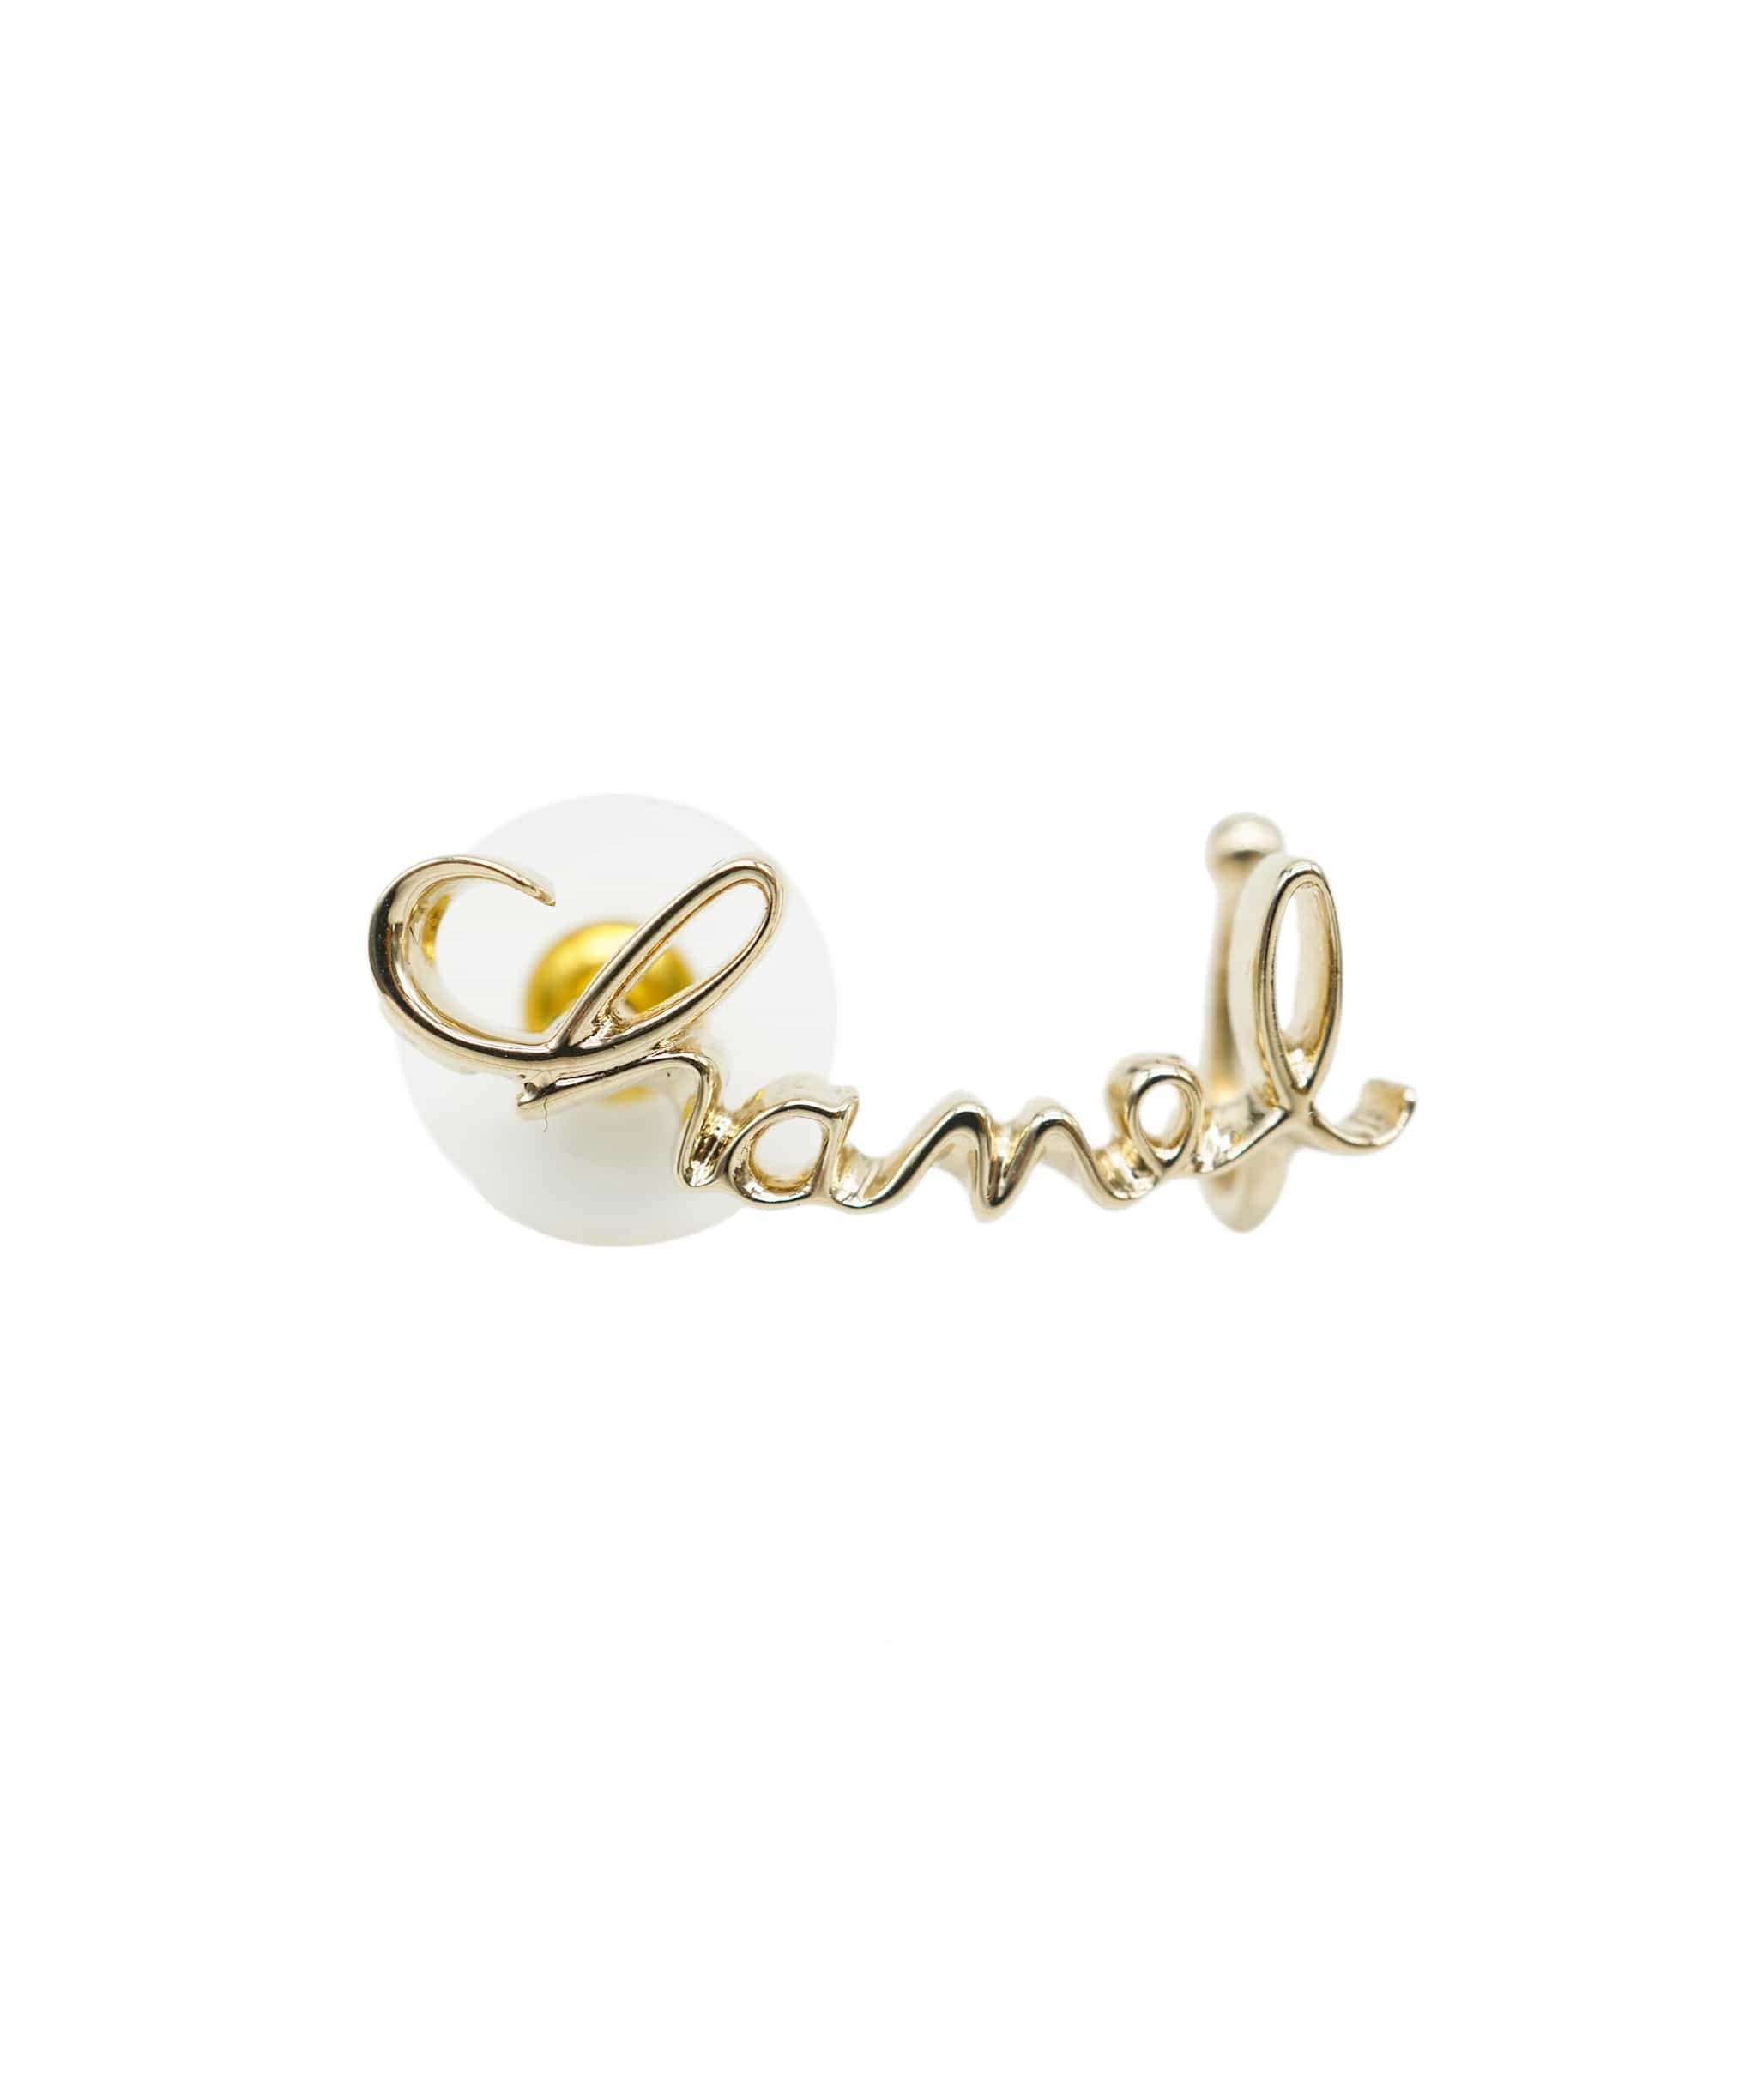 Chanel Chanel cuff earrings  ALC1274